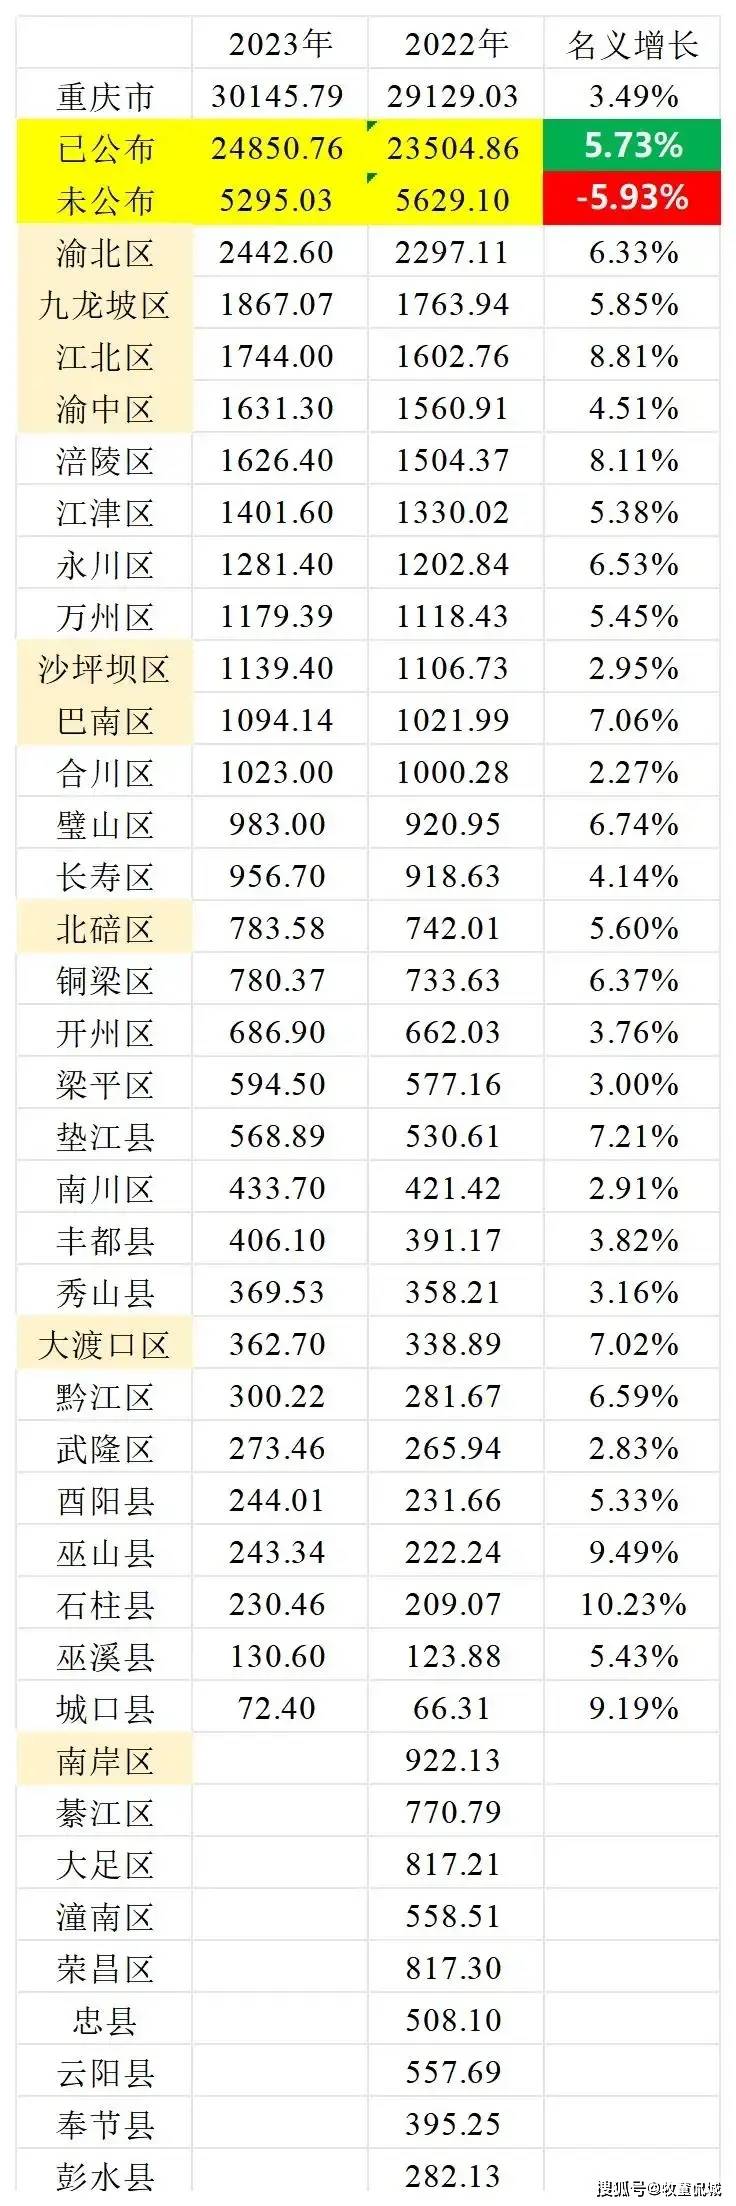 重庆各区县2023年gdp排名:石柱县增速最快,九龙坡江北差距缩小